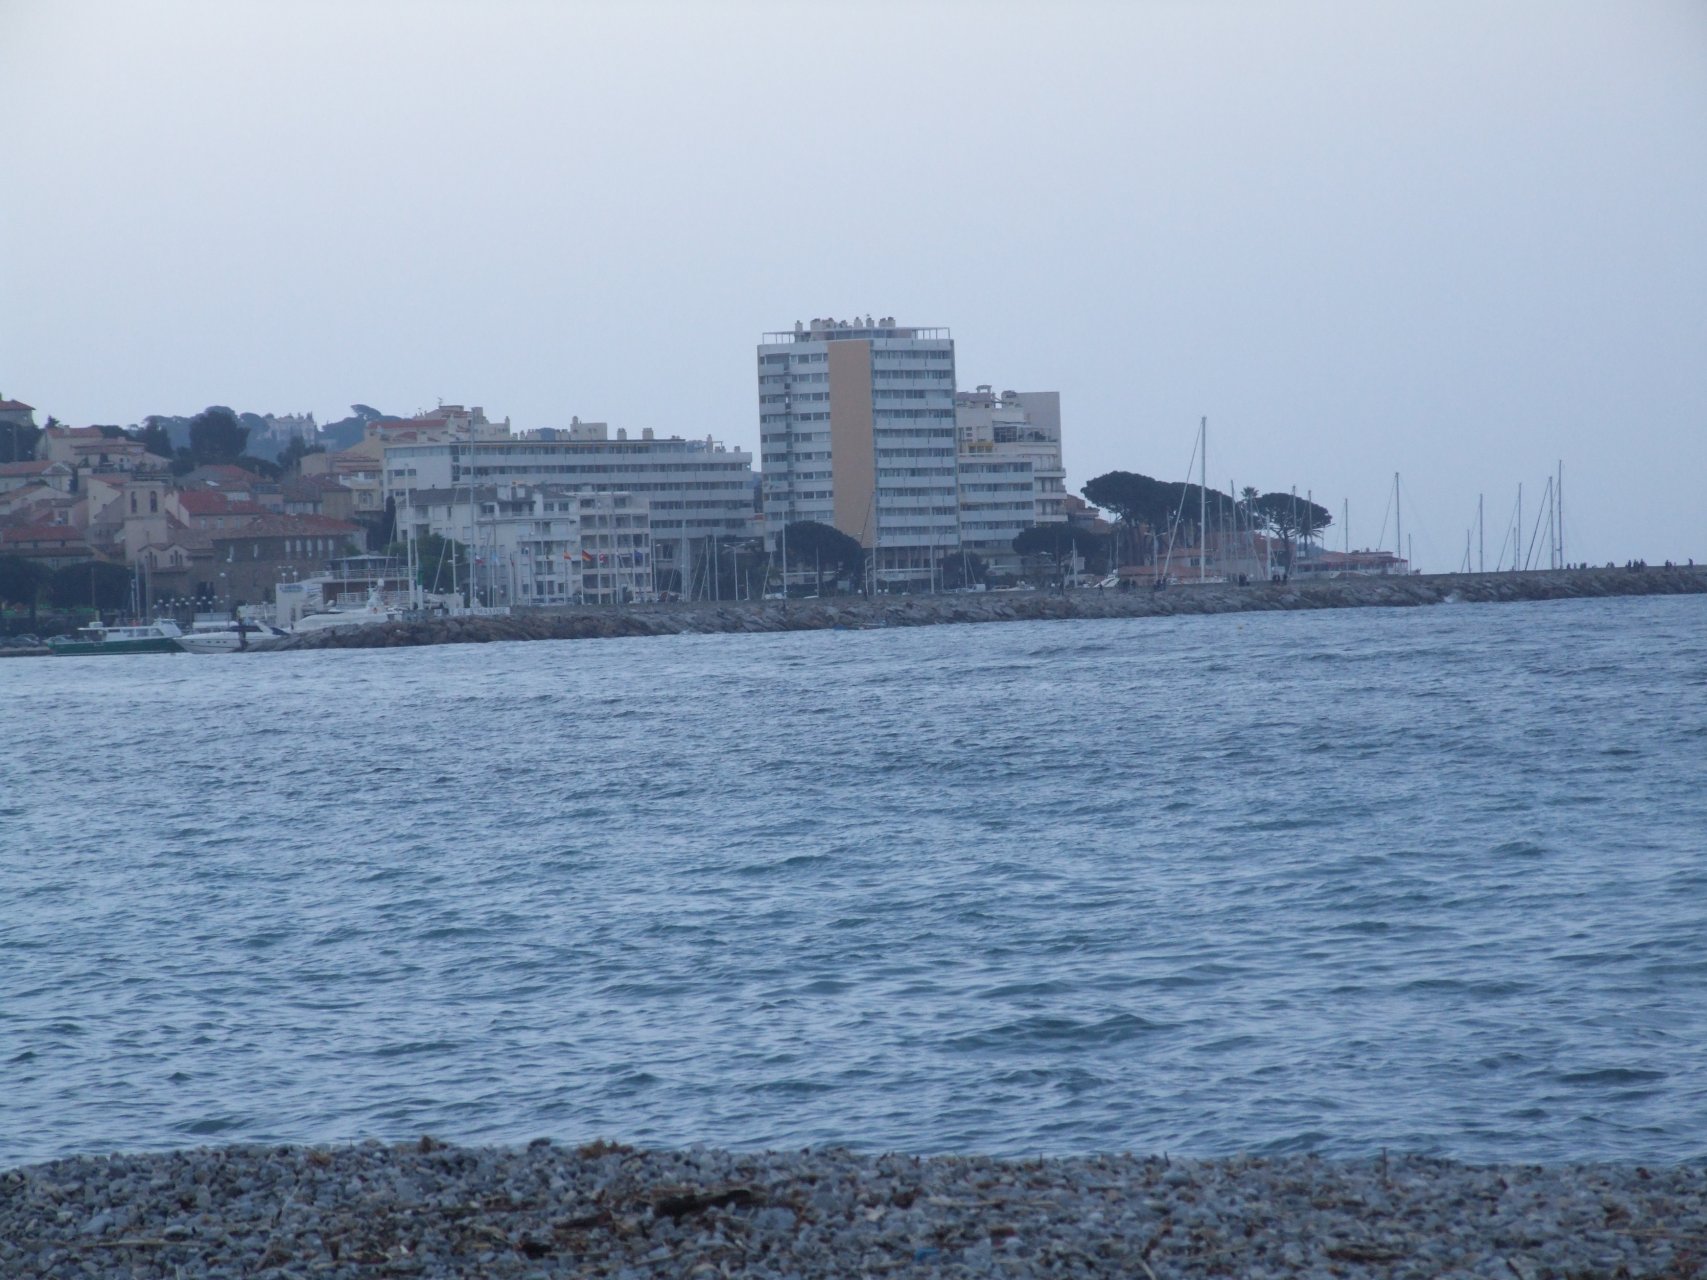 Zatoka Saint-Tropez w pochmurny dzień (w tle Sainte-Maxime)